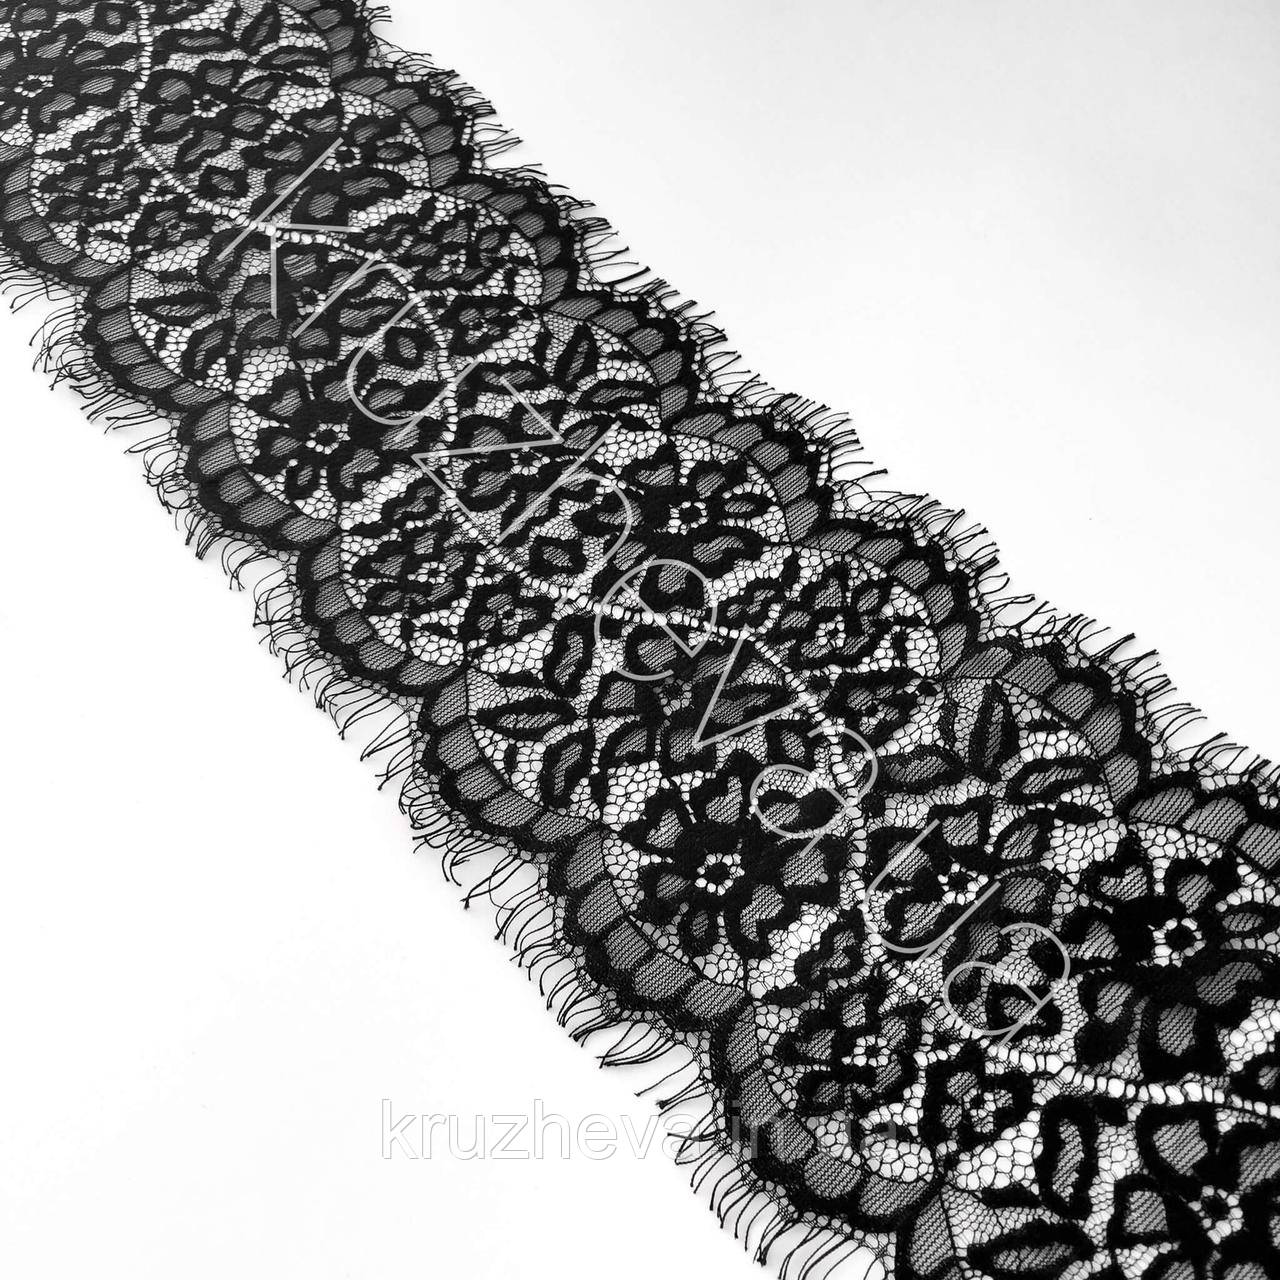 Ажурне французьке мереживо шантильї (з війками) чорного кольору шириною 13 см, довжина купона 3,0 м.